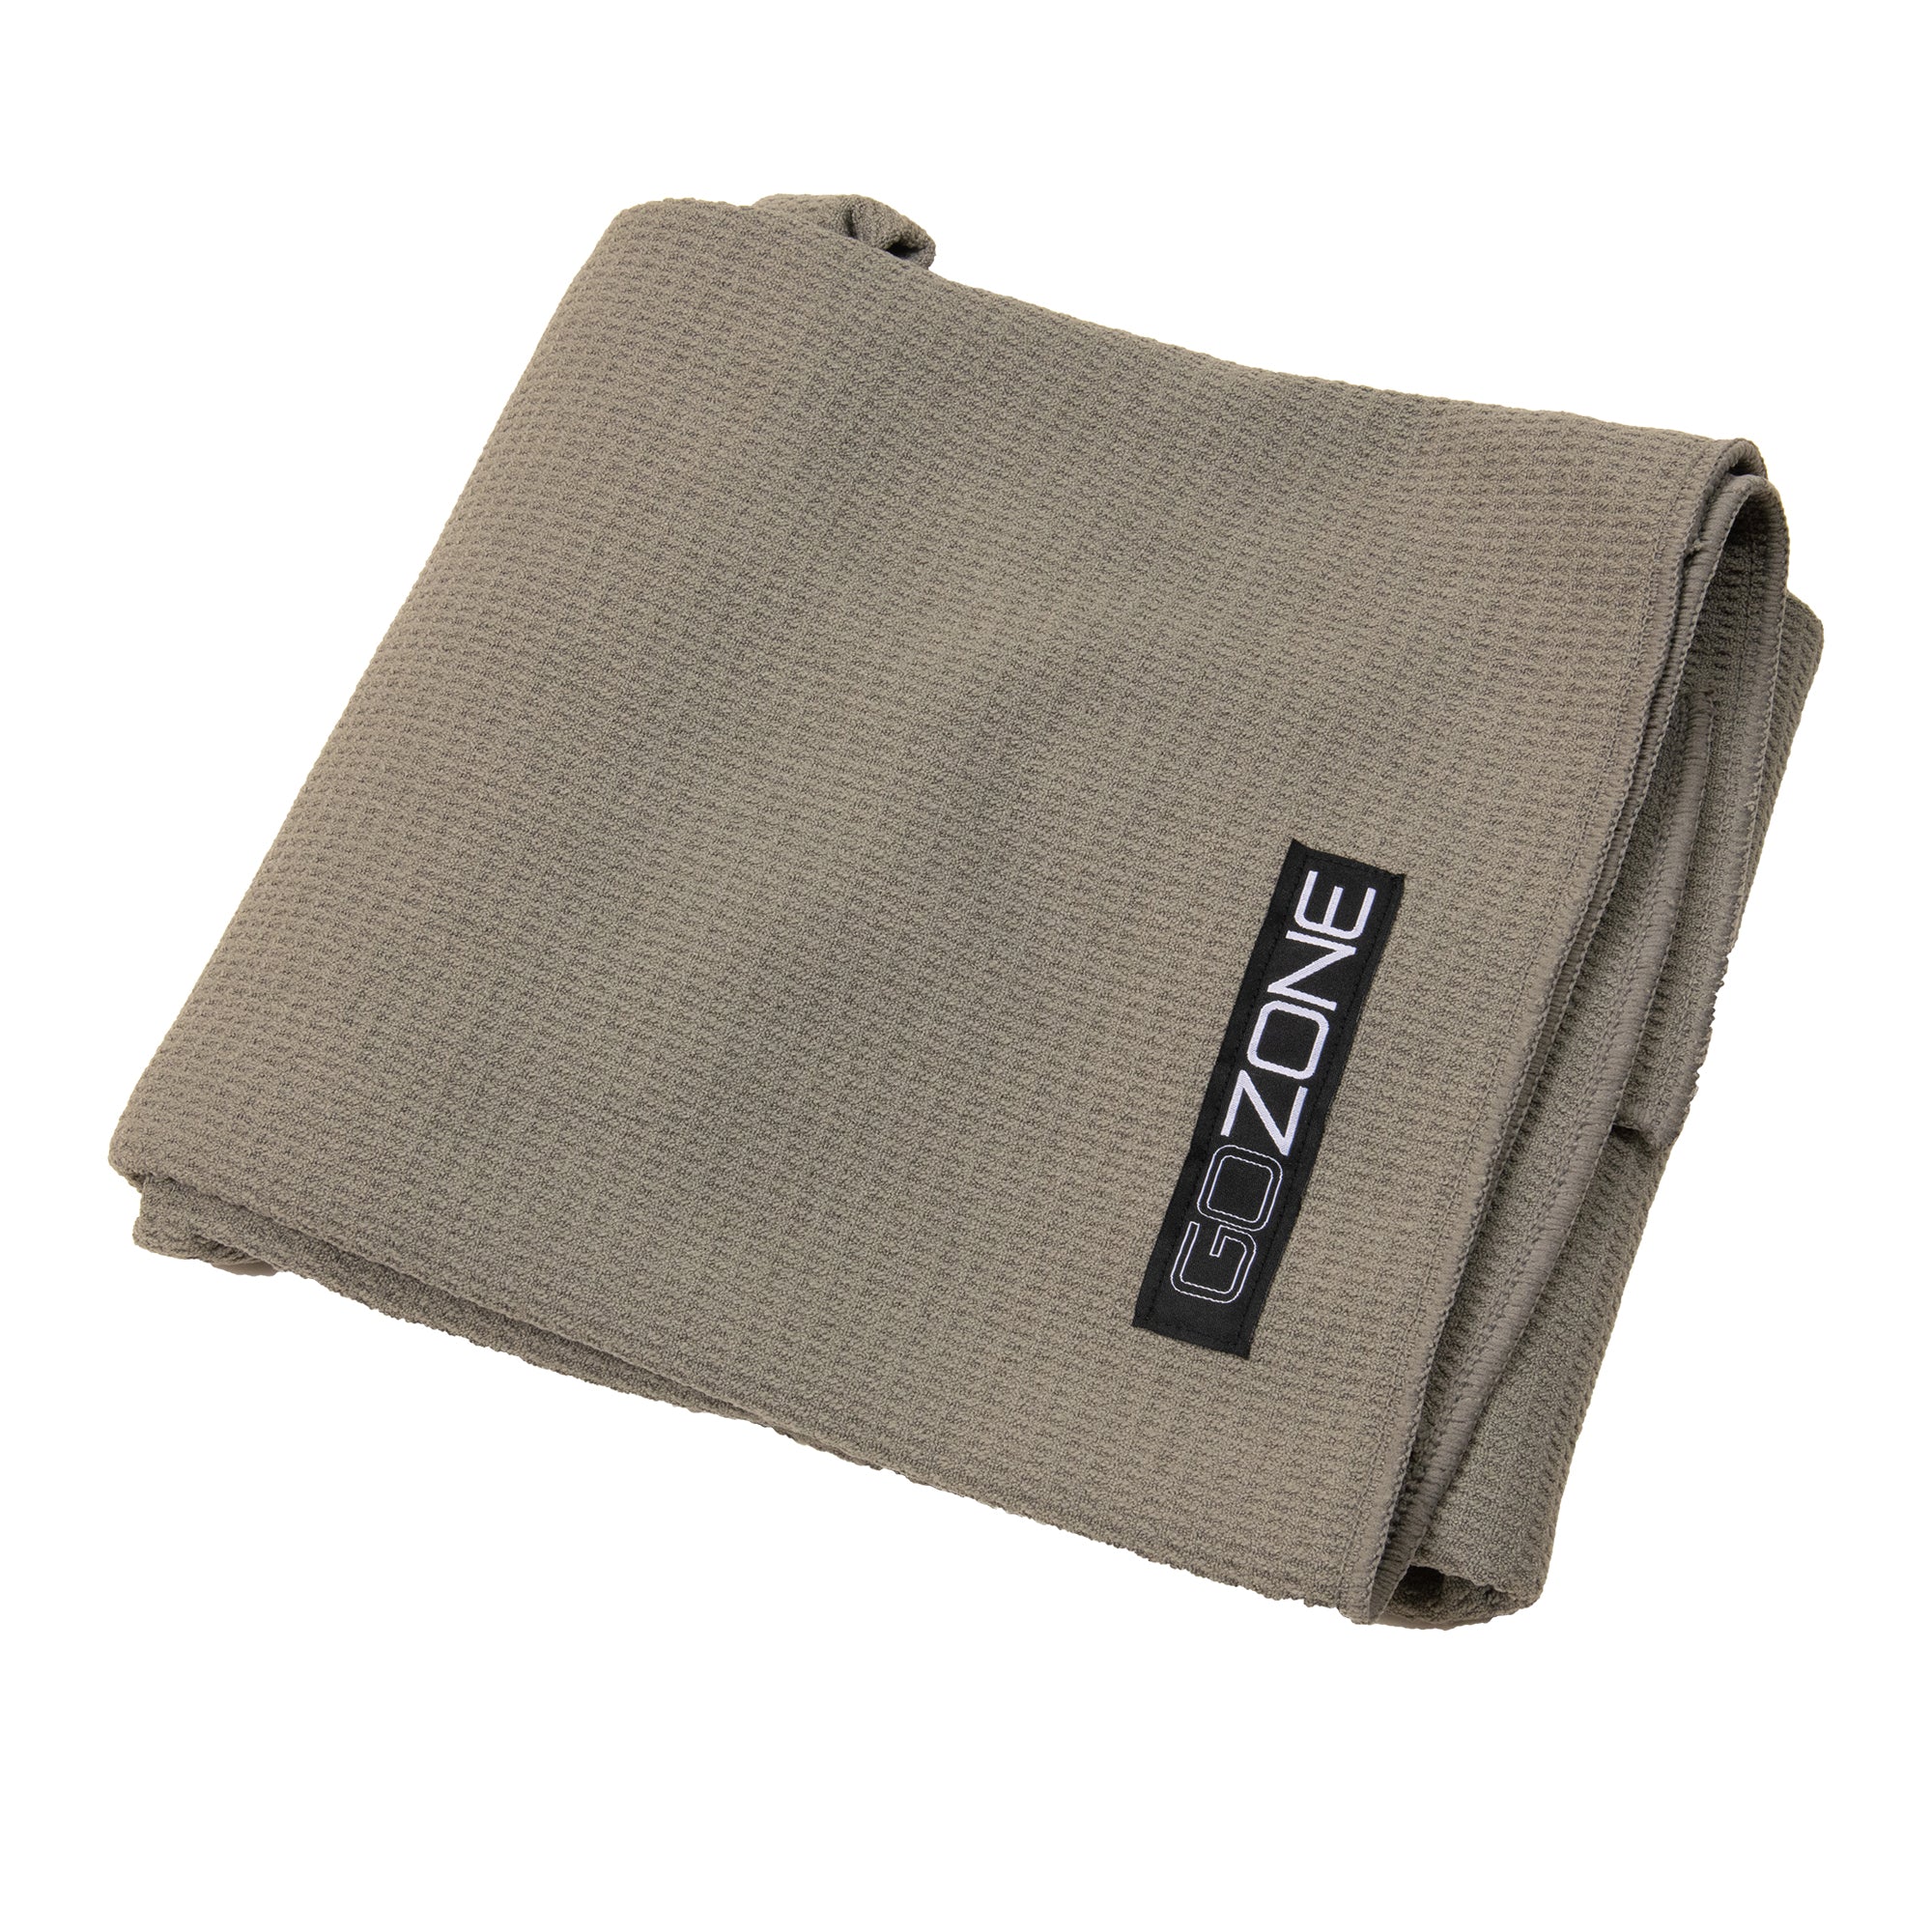 Yoga Towel 24 x 72 - Microfiber Hot Yoga Mat Towels 